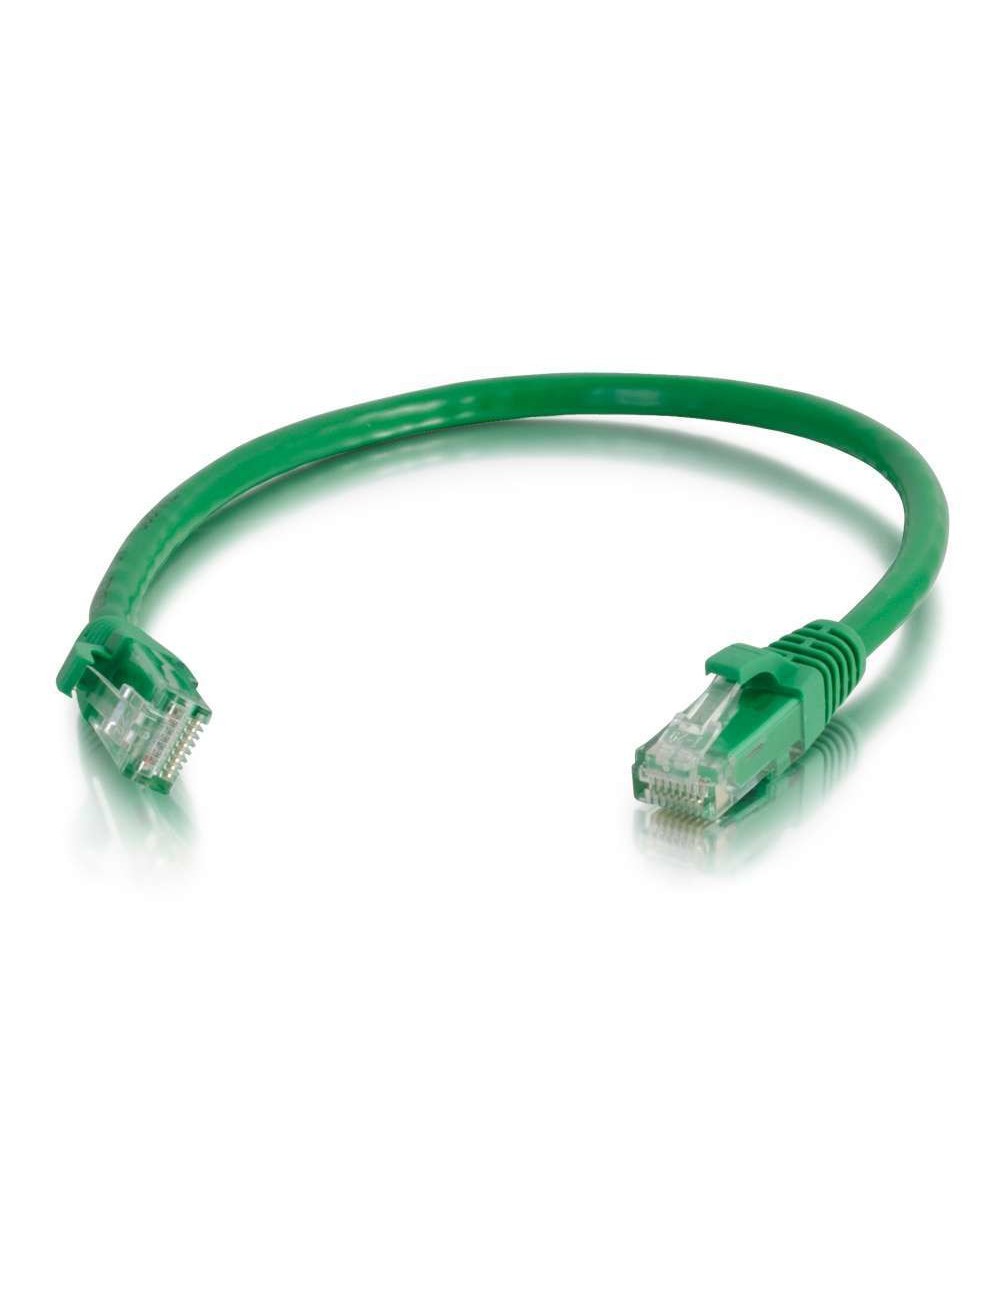 C2G 5m Cat6 Patch Cable câble de réseau Vert U UTP (UTP)